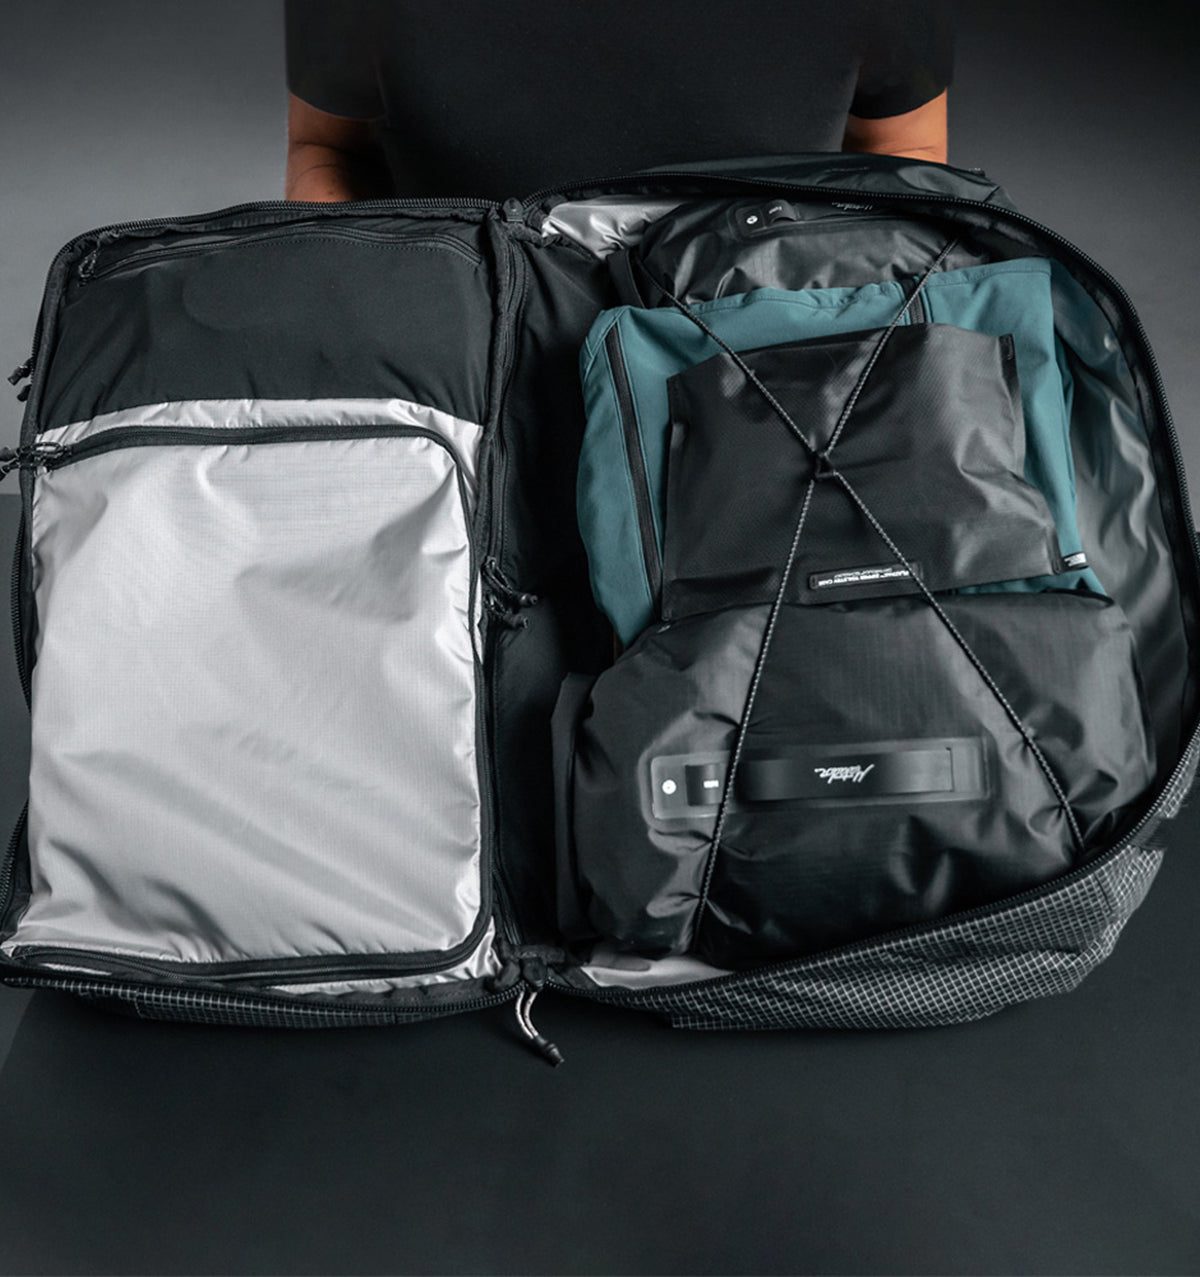 Matador 16" GlobeRider45 Travel Backpack 45L - Black